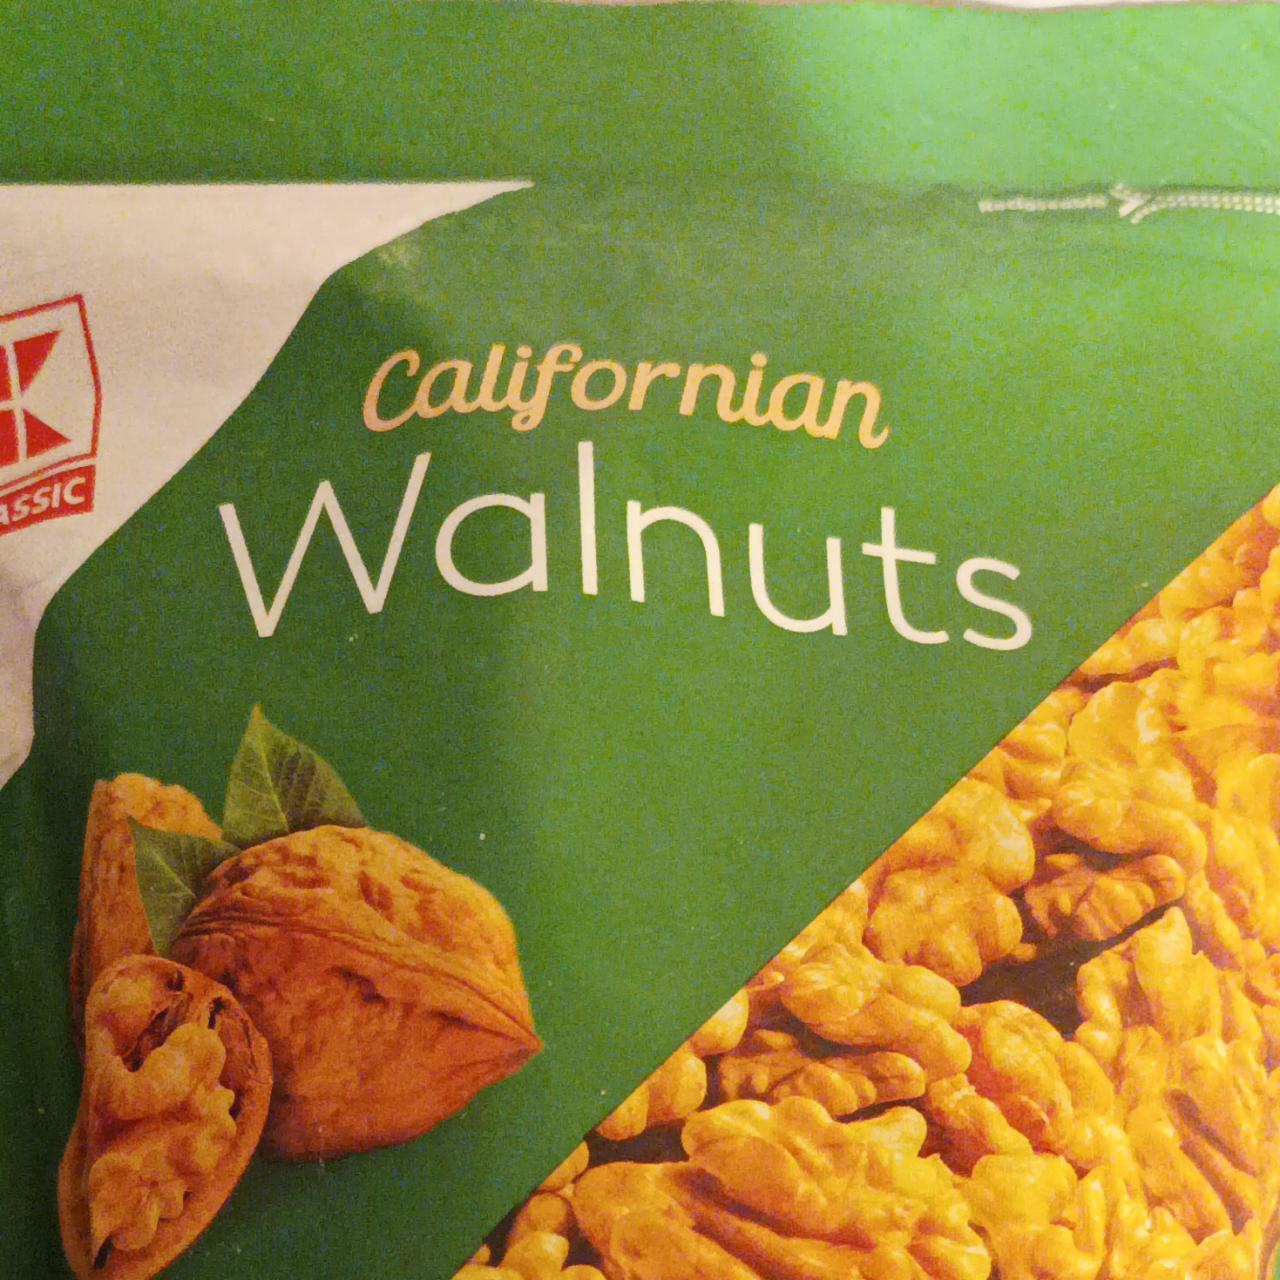 Fotografie - Californian Walnuts K-Classic